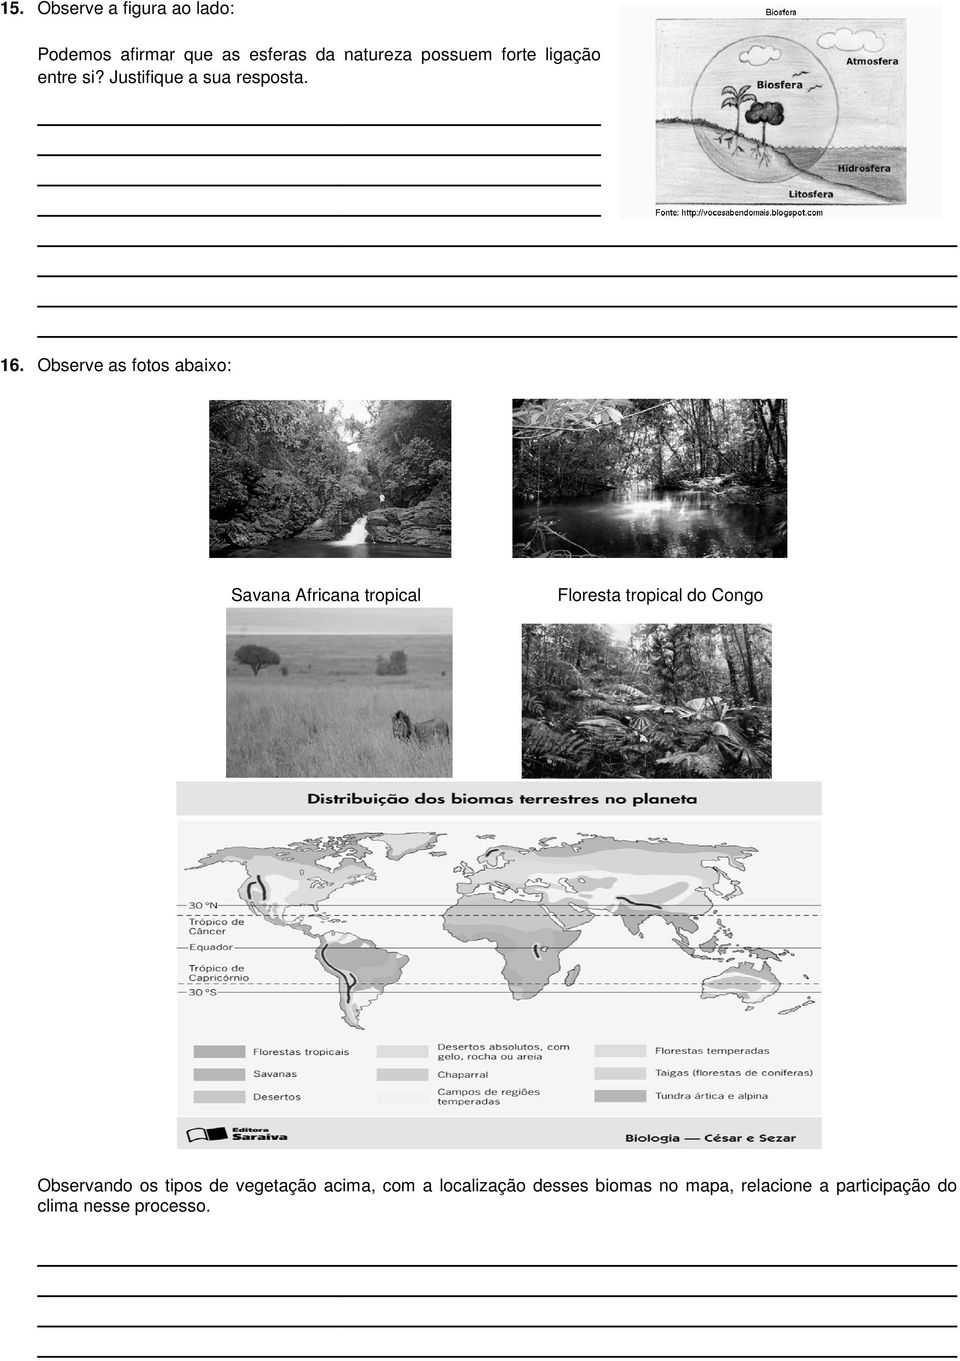 Observe as fotos abaixo: Savana Africana tropical Floresta tropical do Congo